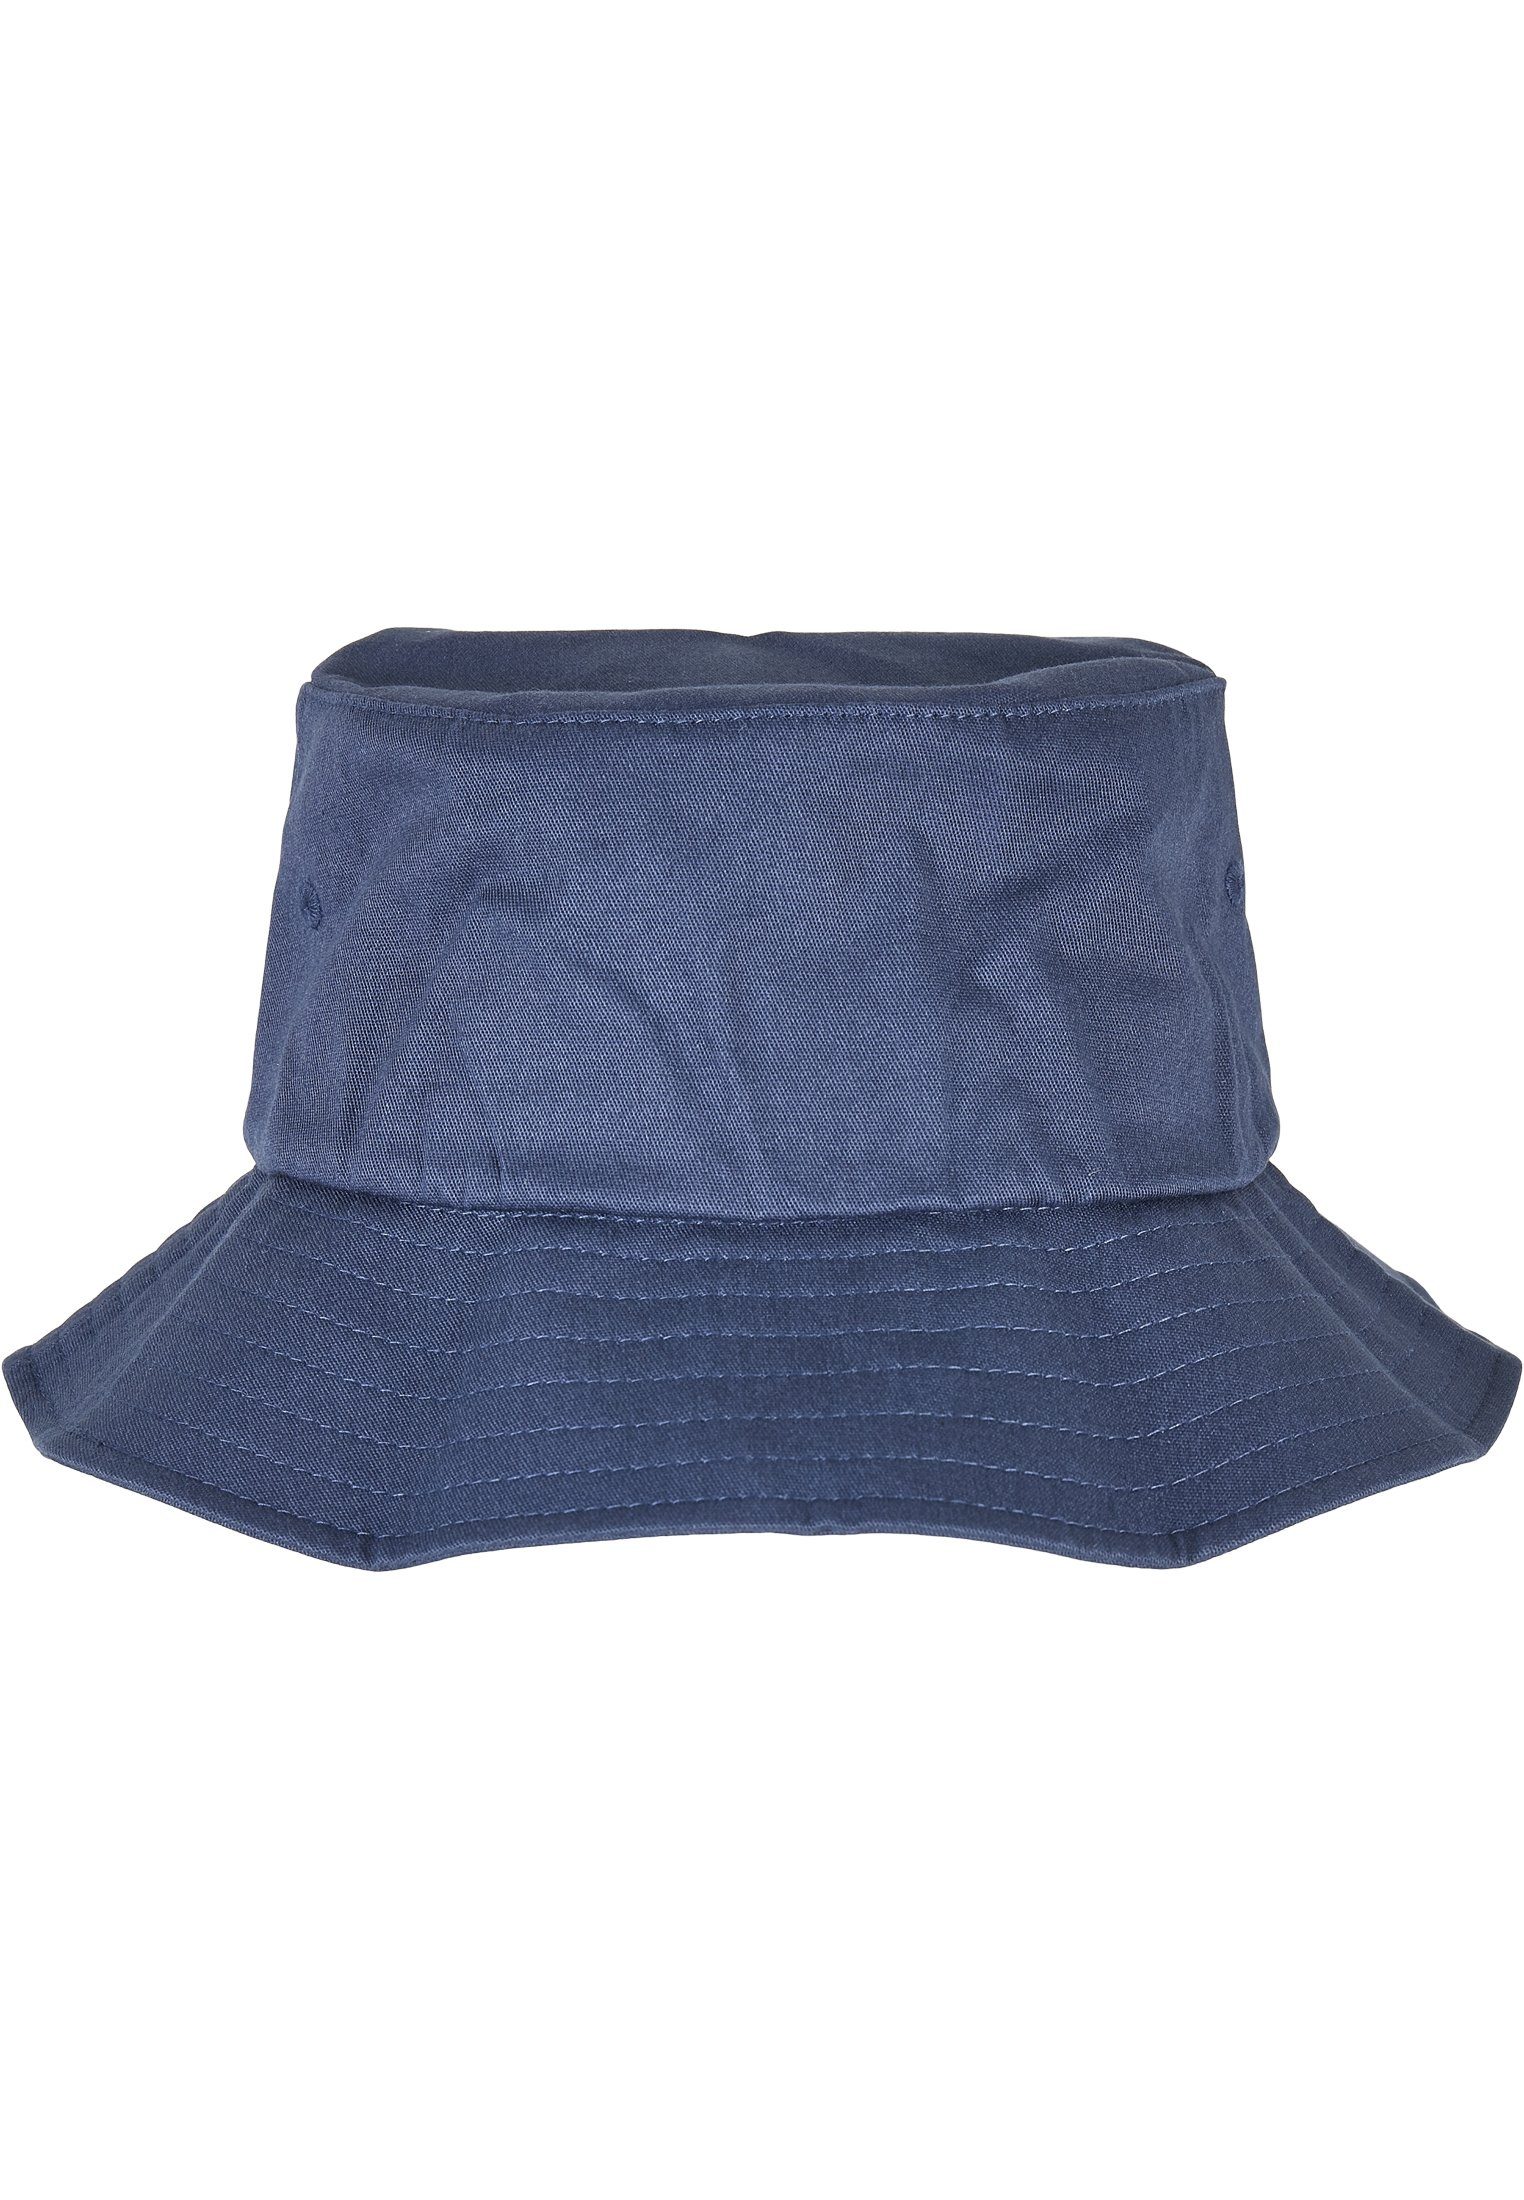 MisterTee Flex One Accessoires Bucket Liner Cap Hat